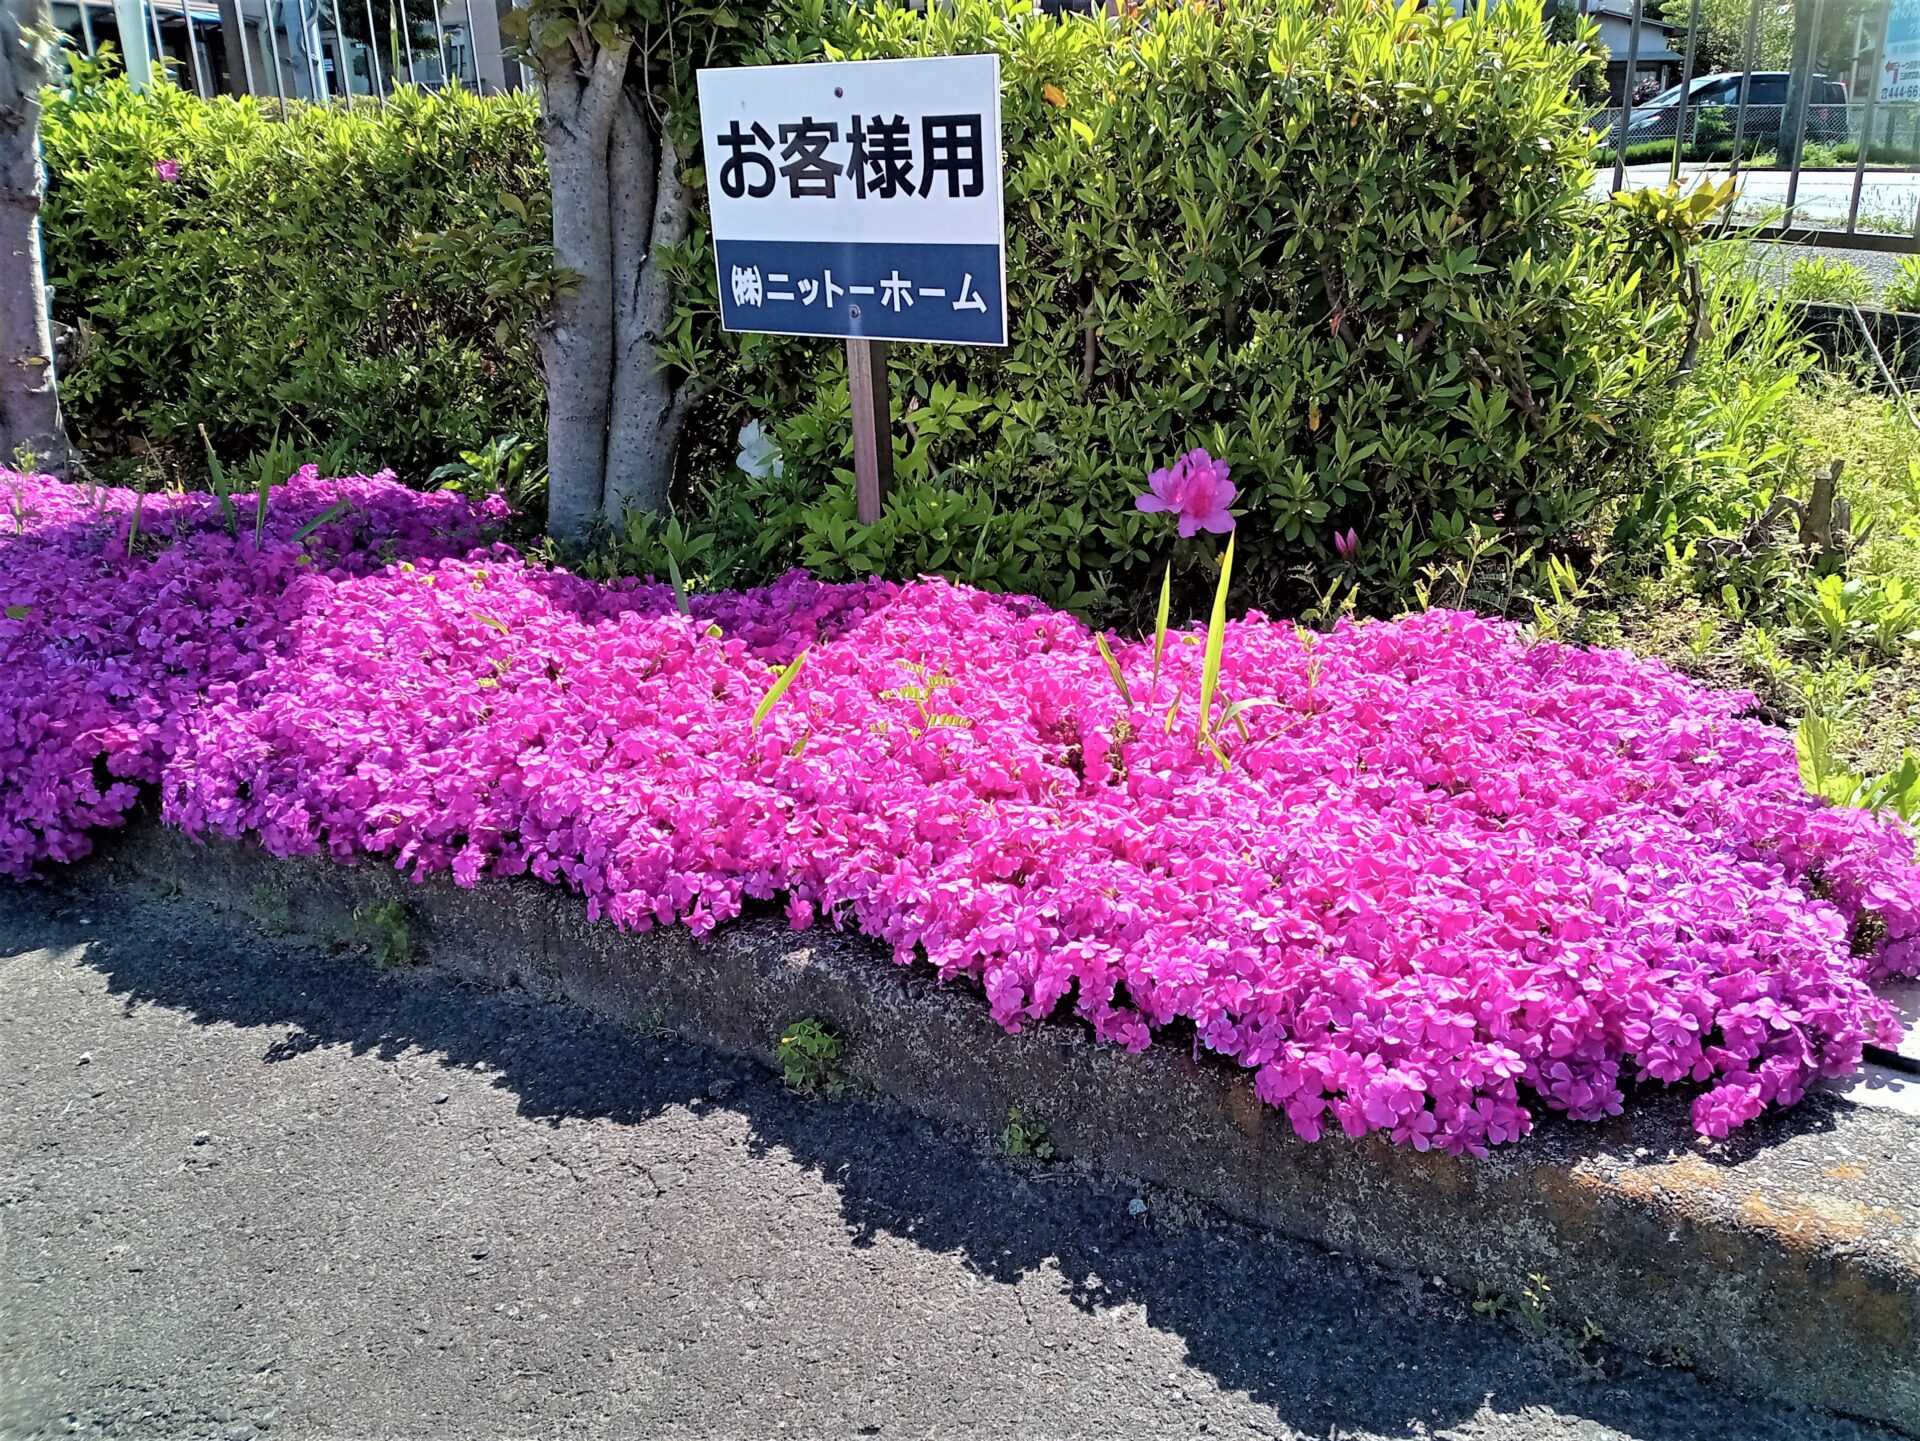 駐車場の芝桜が今年も綺麗に咲きました@浜松市工務店